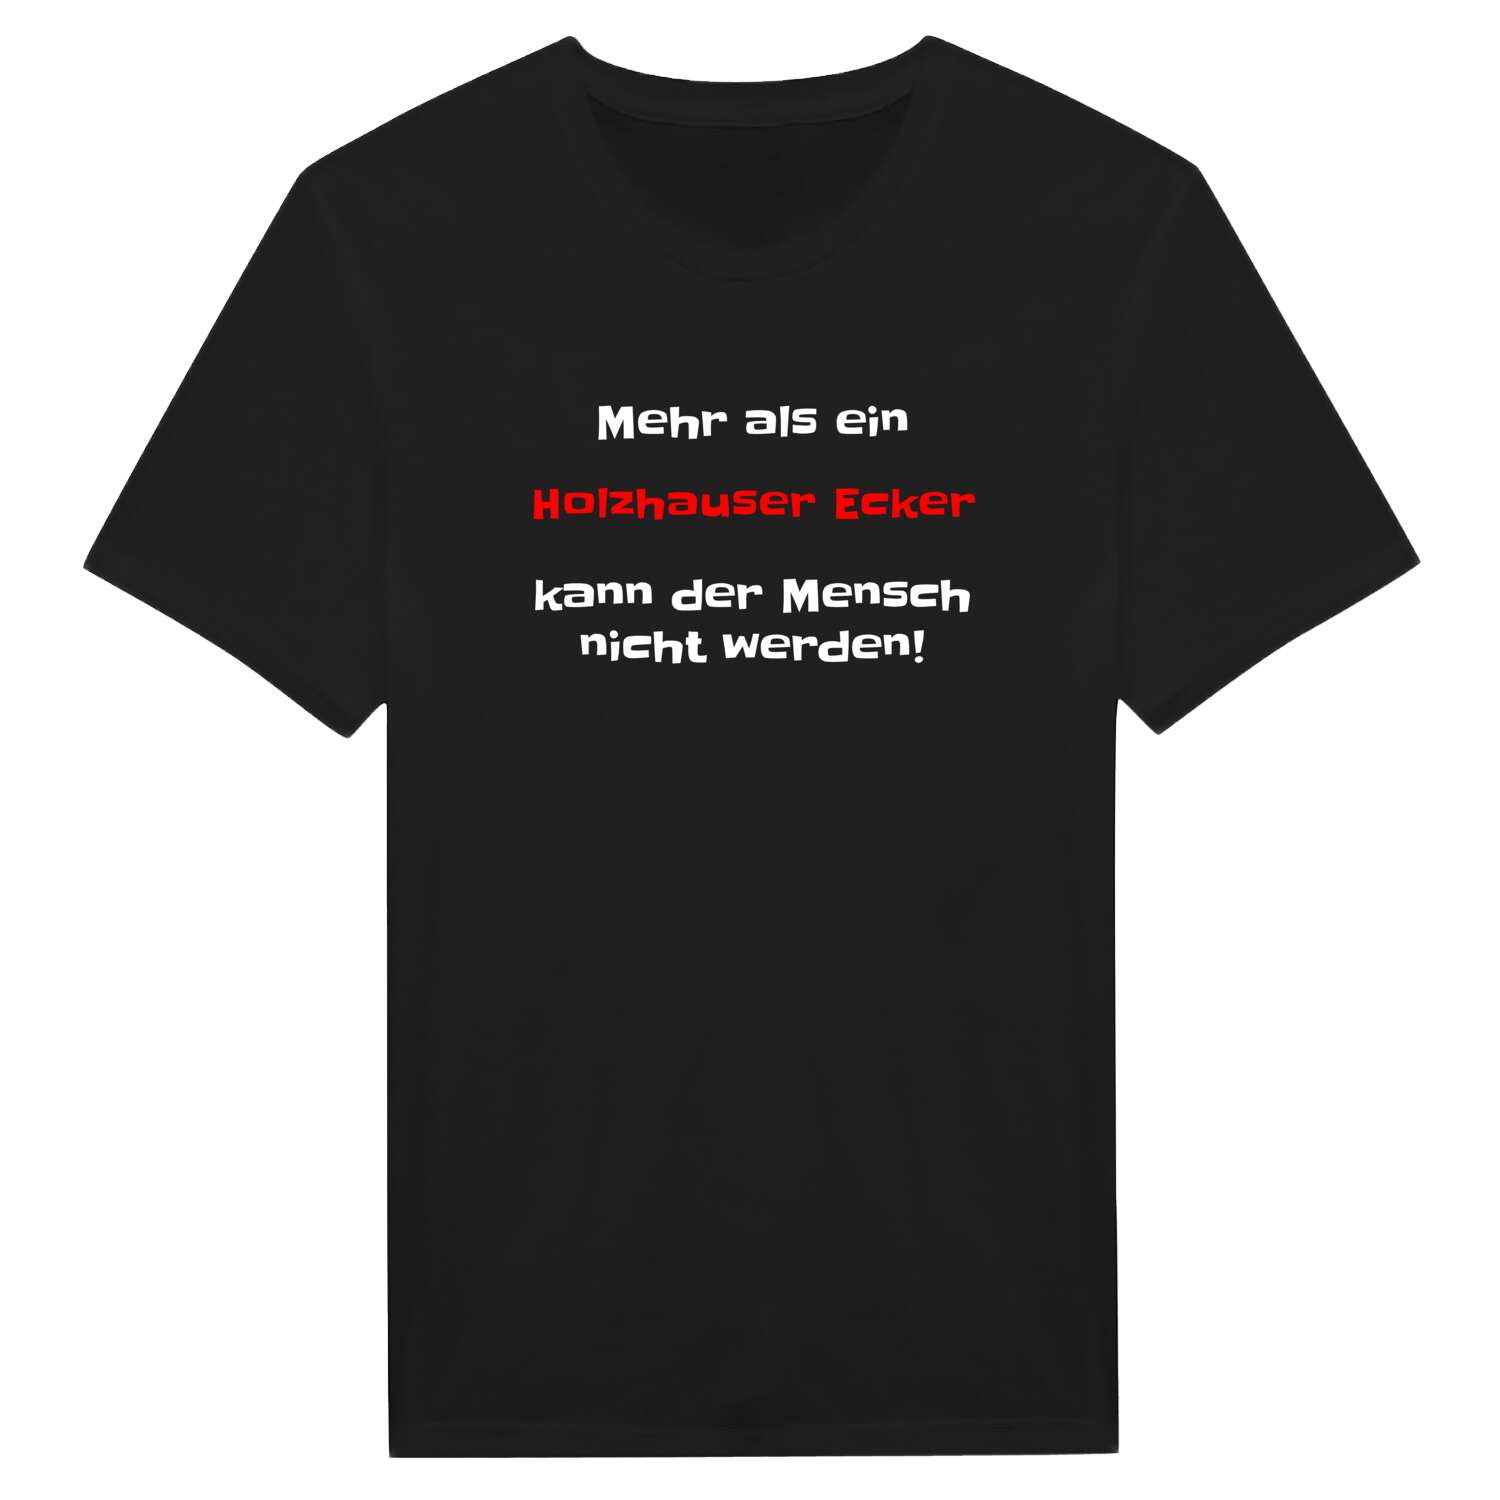 Holzhauser Eck T-Shirt »Mehr als ein«